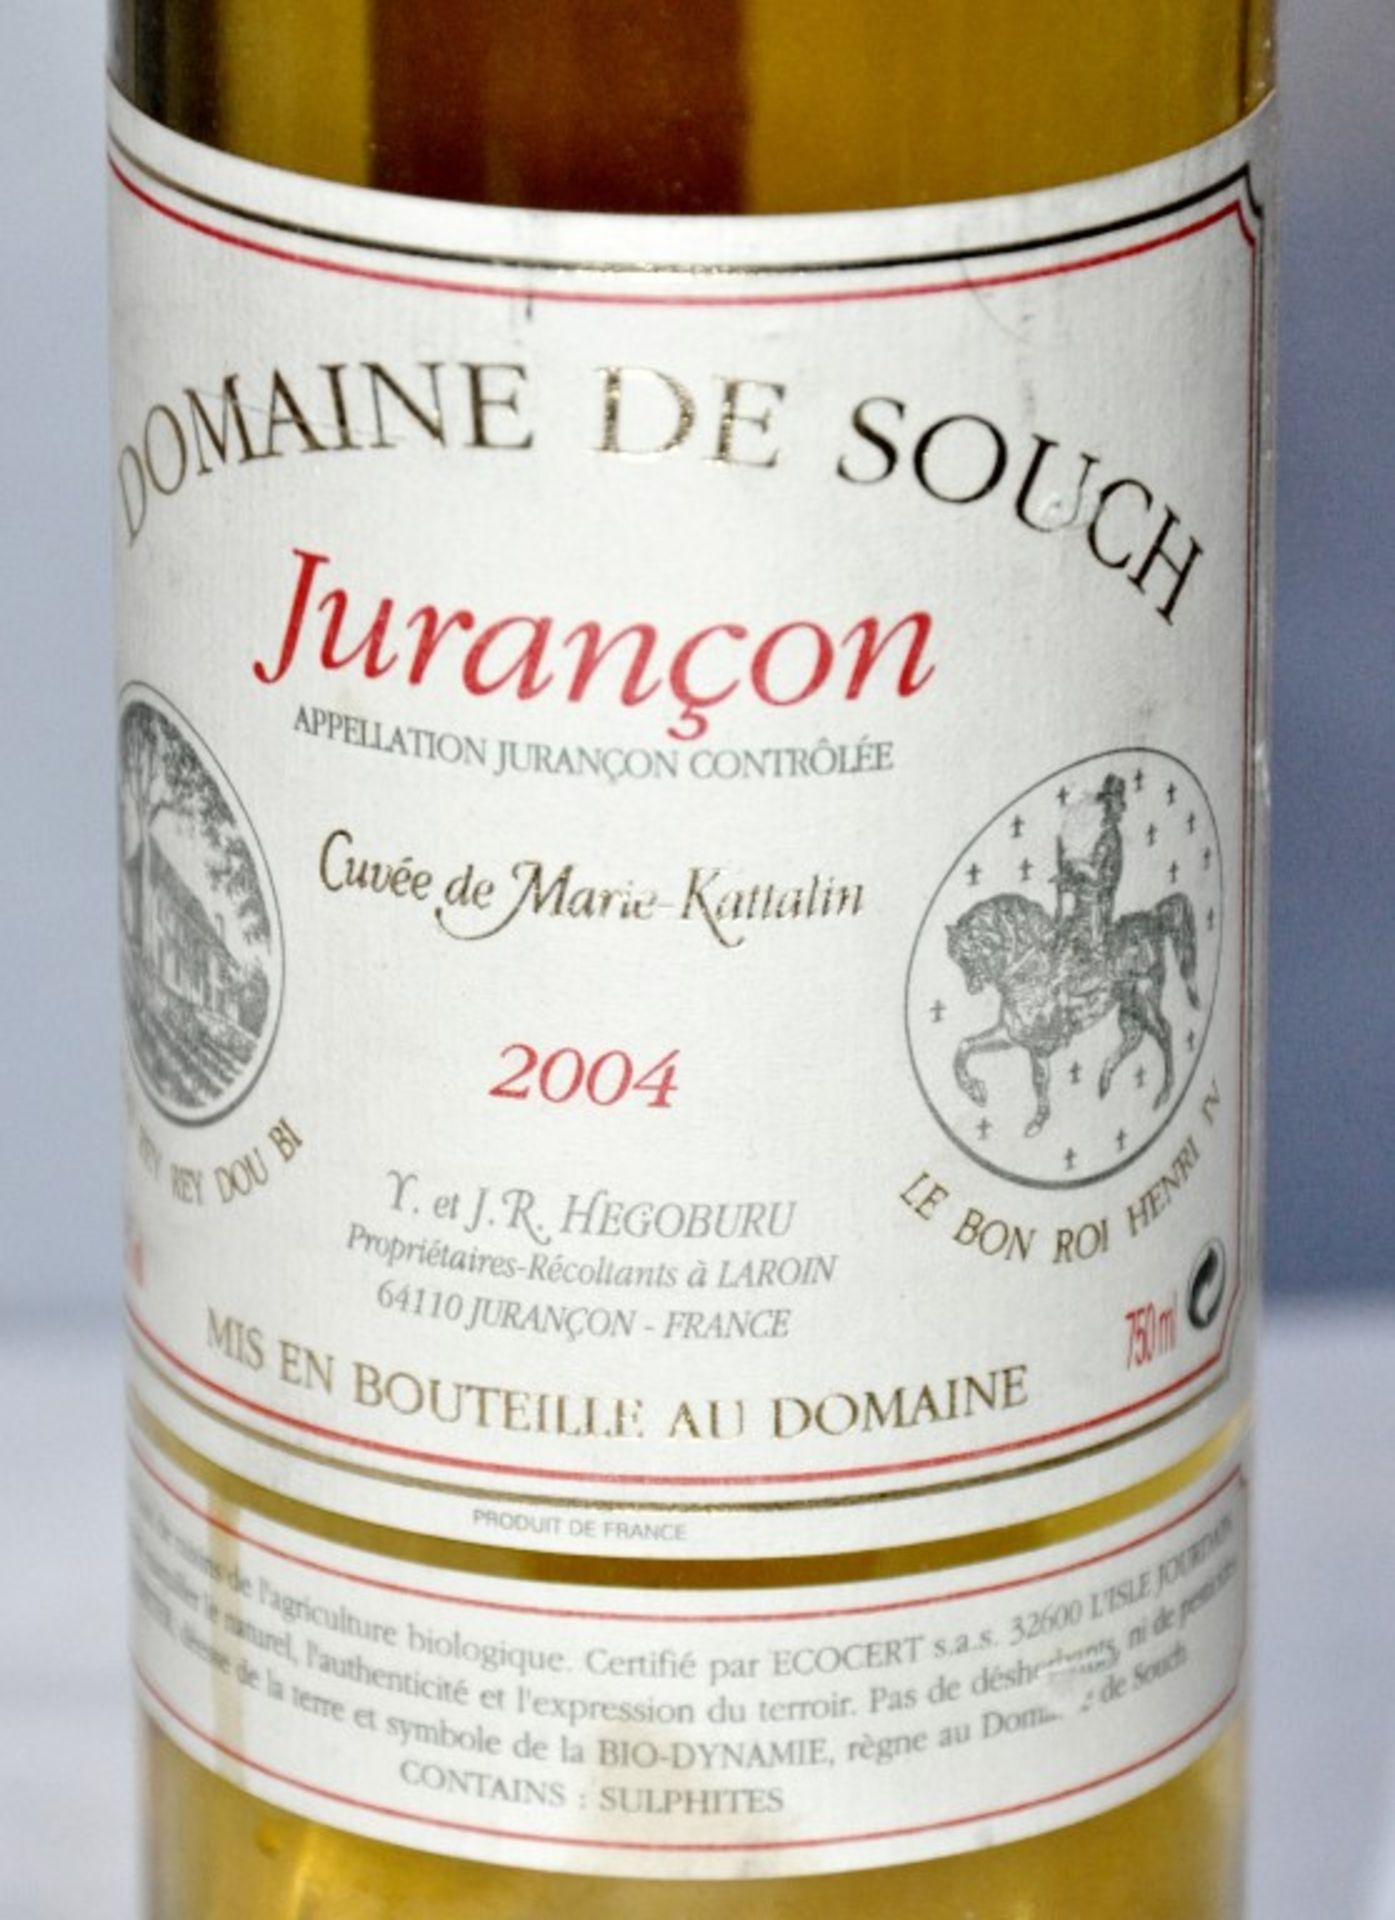 1 x Domaine de Souch Cuvee Marie Kattalin, Jurancon, France – 2004 - Volume 12.5% - 75cl – Ref - Image 2 of 3